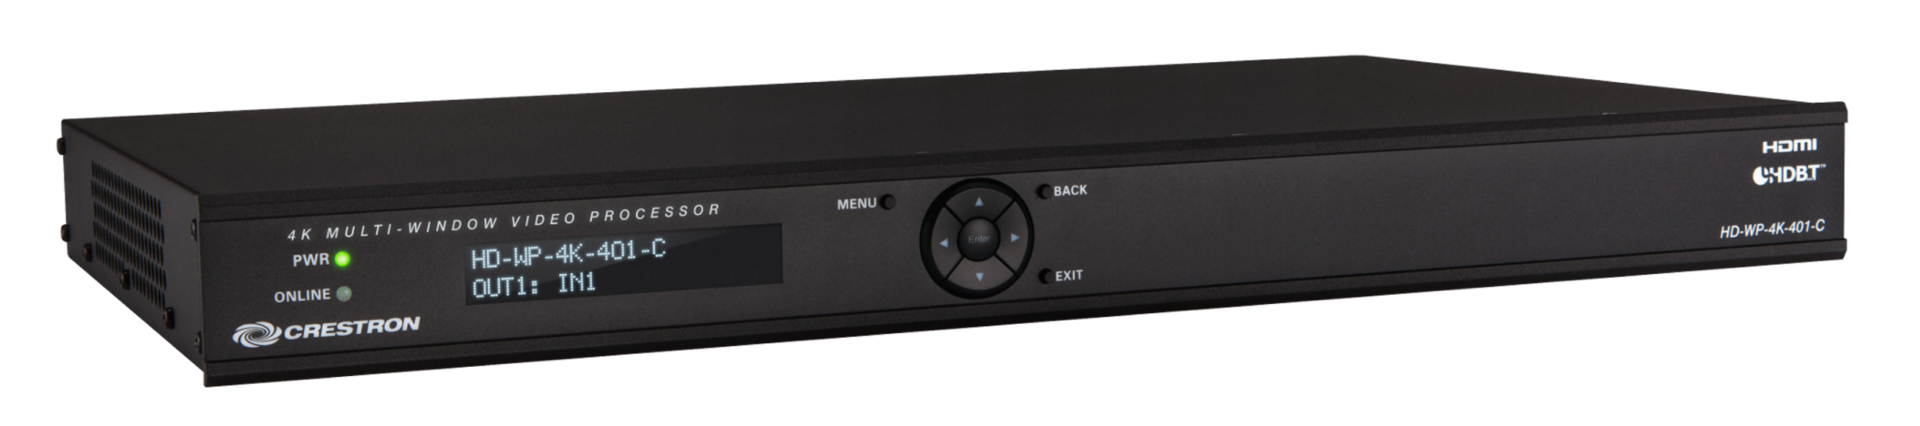 bộ xử lý video HD-WP-4K-401-C